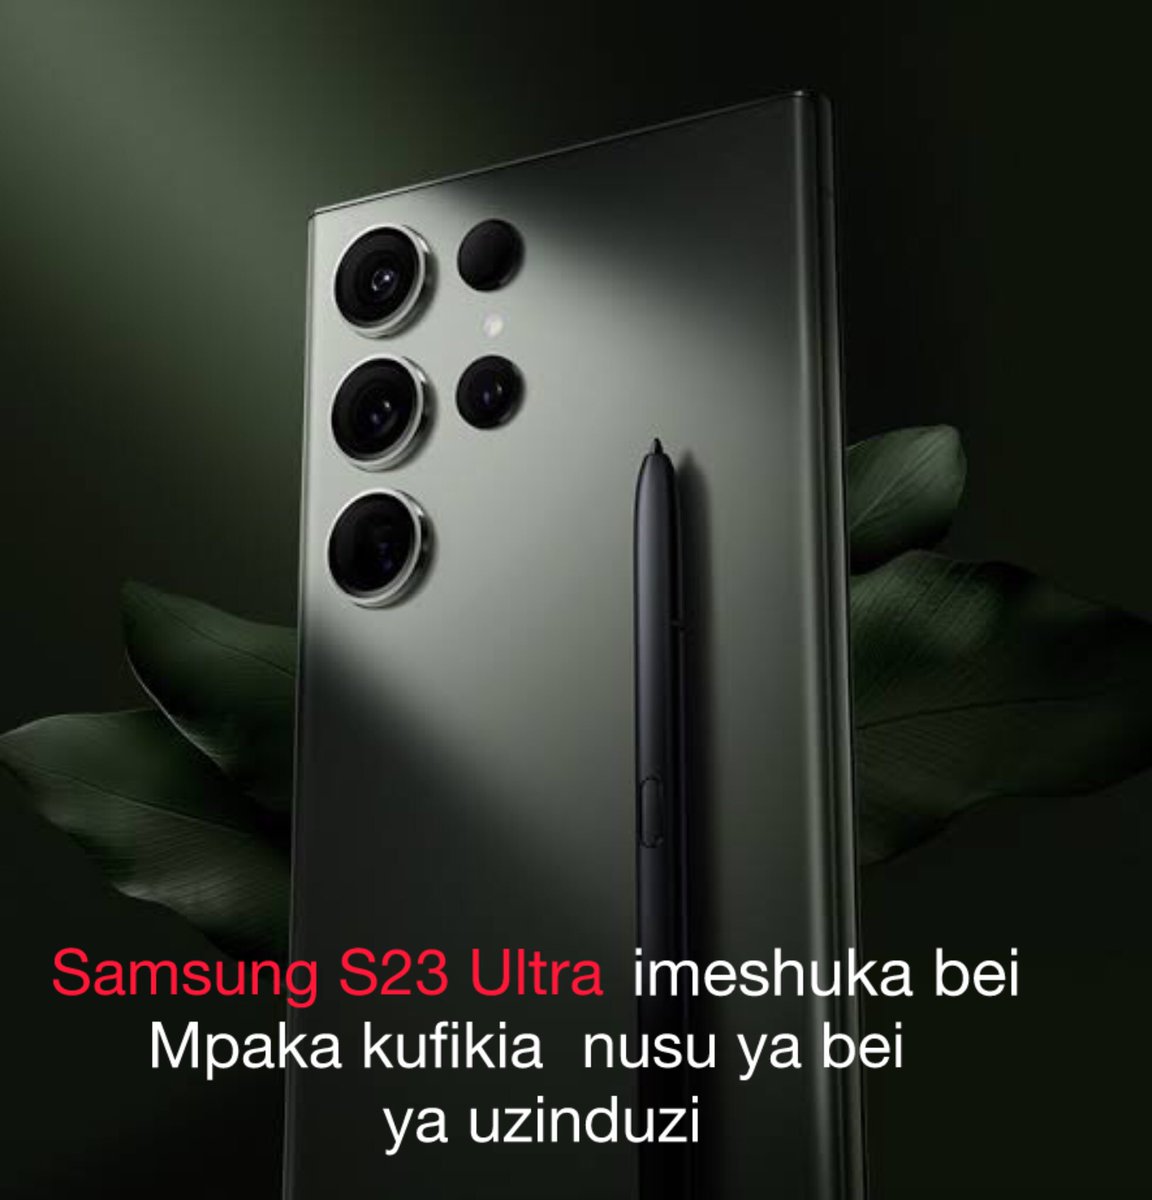 Samsung S23 Ultra ilitambulishwa rasmi tarehe 17 February 2023 pamoja na model nyingine ( S23 na S23 plus) kwa bei ya kuanzia £1249. Sasa S23 ultra imeshuka na kufikia £669( sawana nusu ya bei ya uzinduzi).